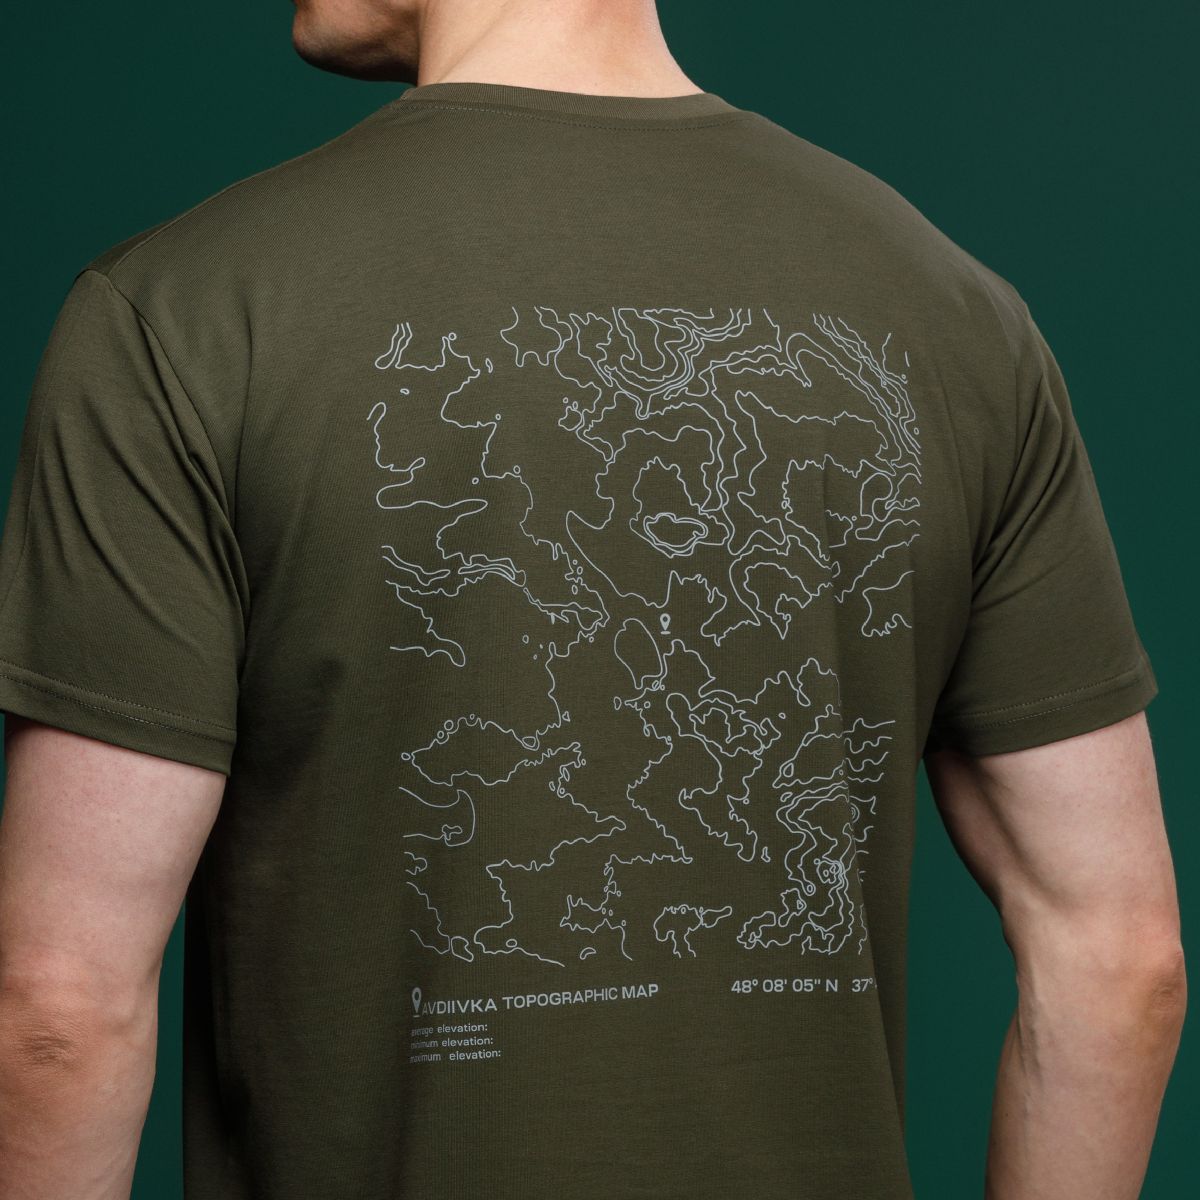 Базовая футболка Military T-Shirt. Авдеевка. Топографическая карта. Хлопок, олива. Размер S 5